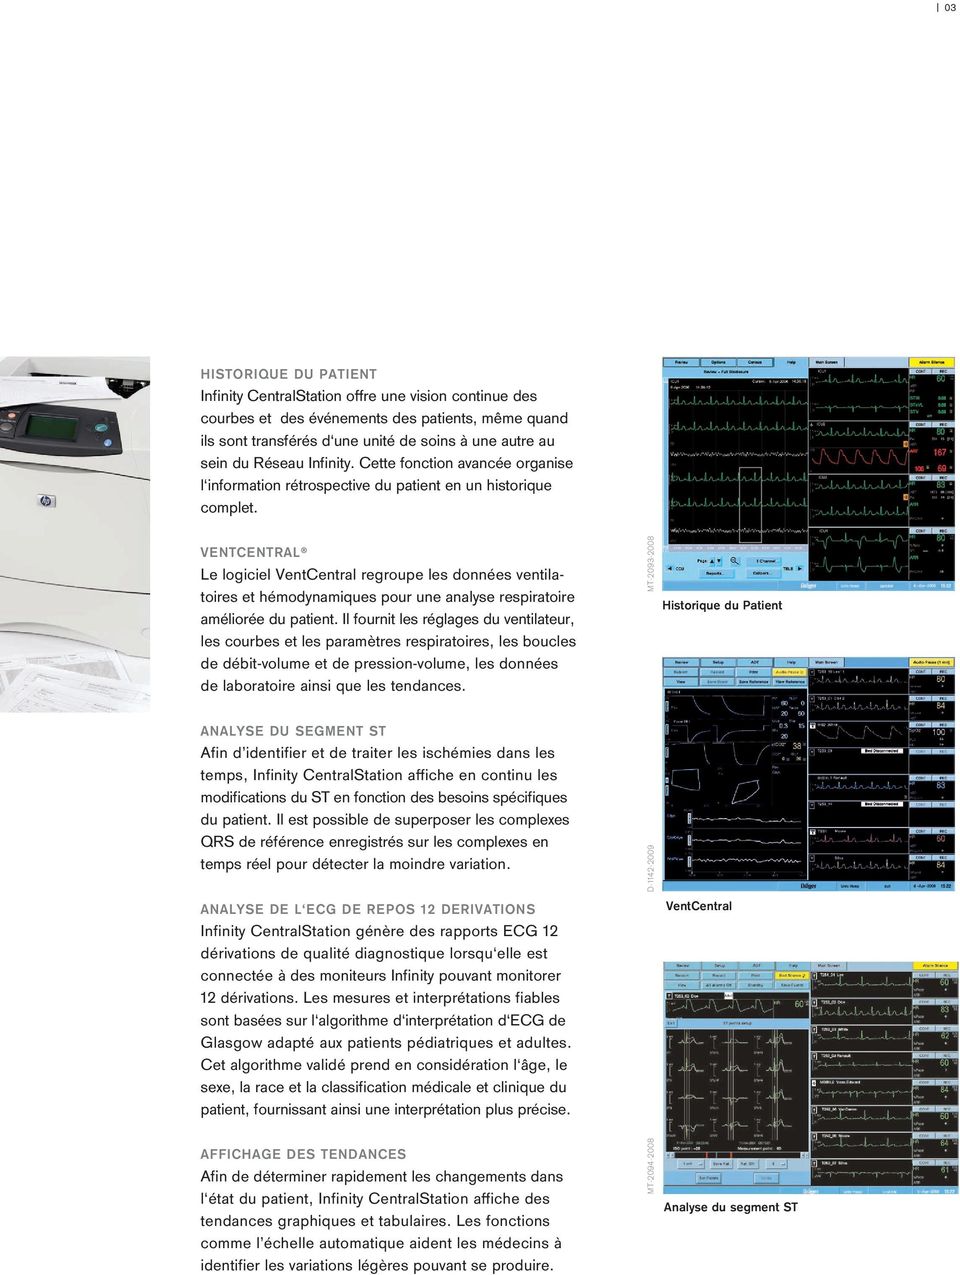 VENTCENTRAL Le logiciel VentCentral regroupe les données ventilatoires et hémodynamiques pour une analyse respiratoire améliorée du patient.